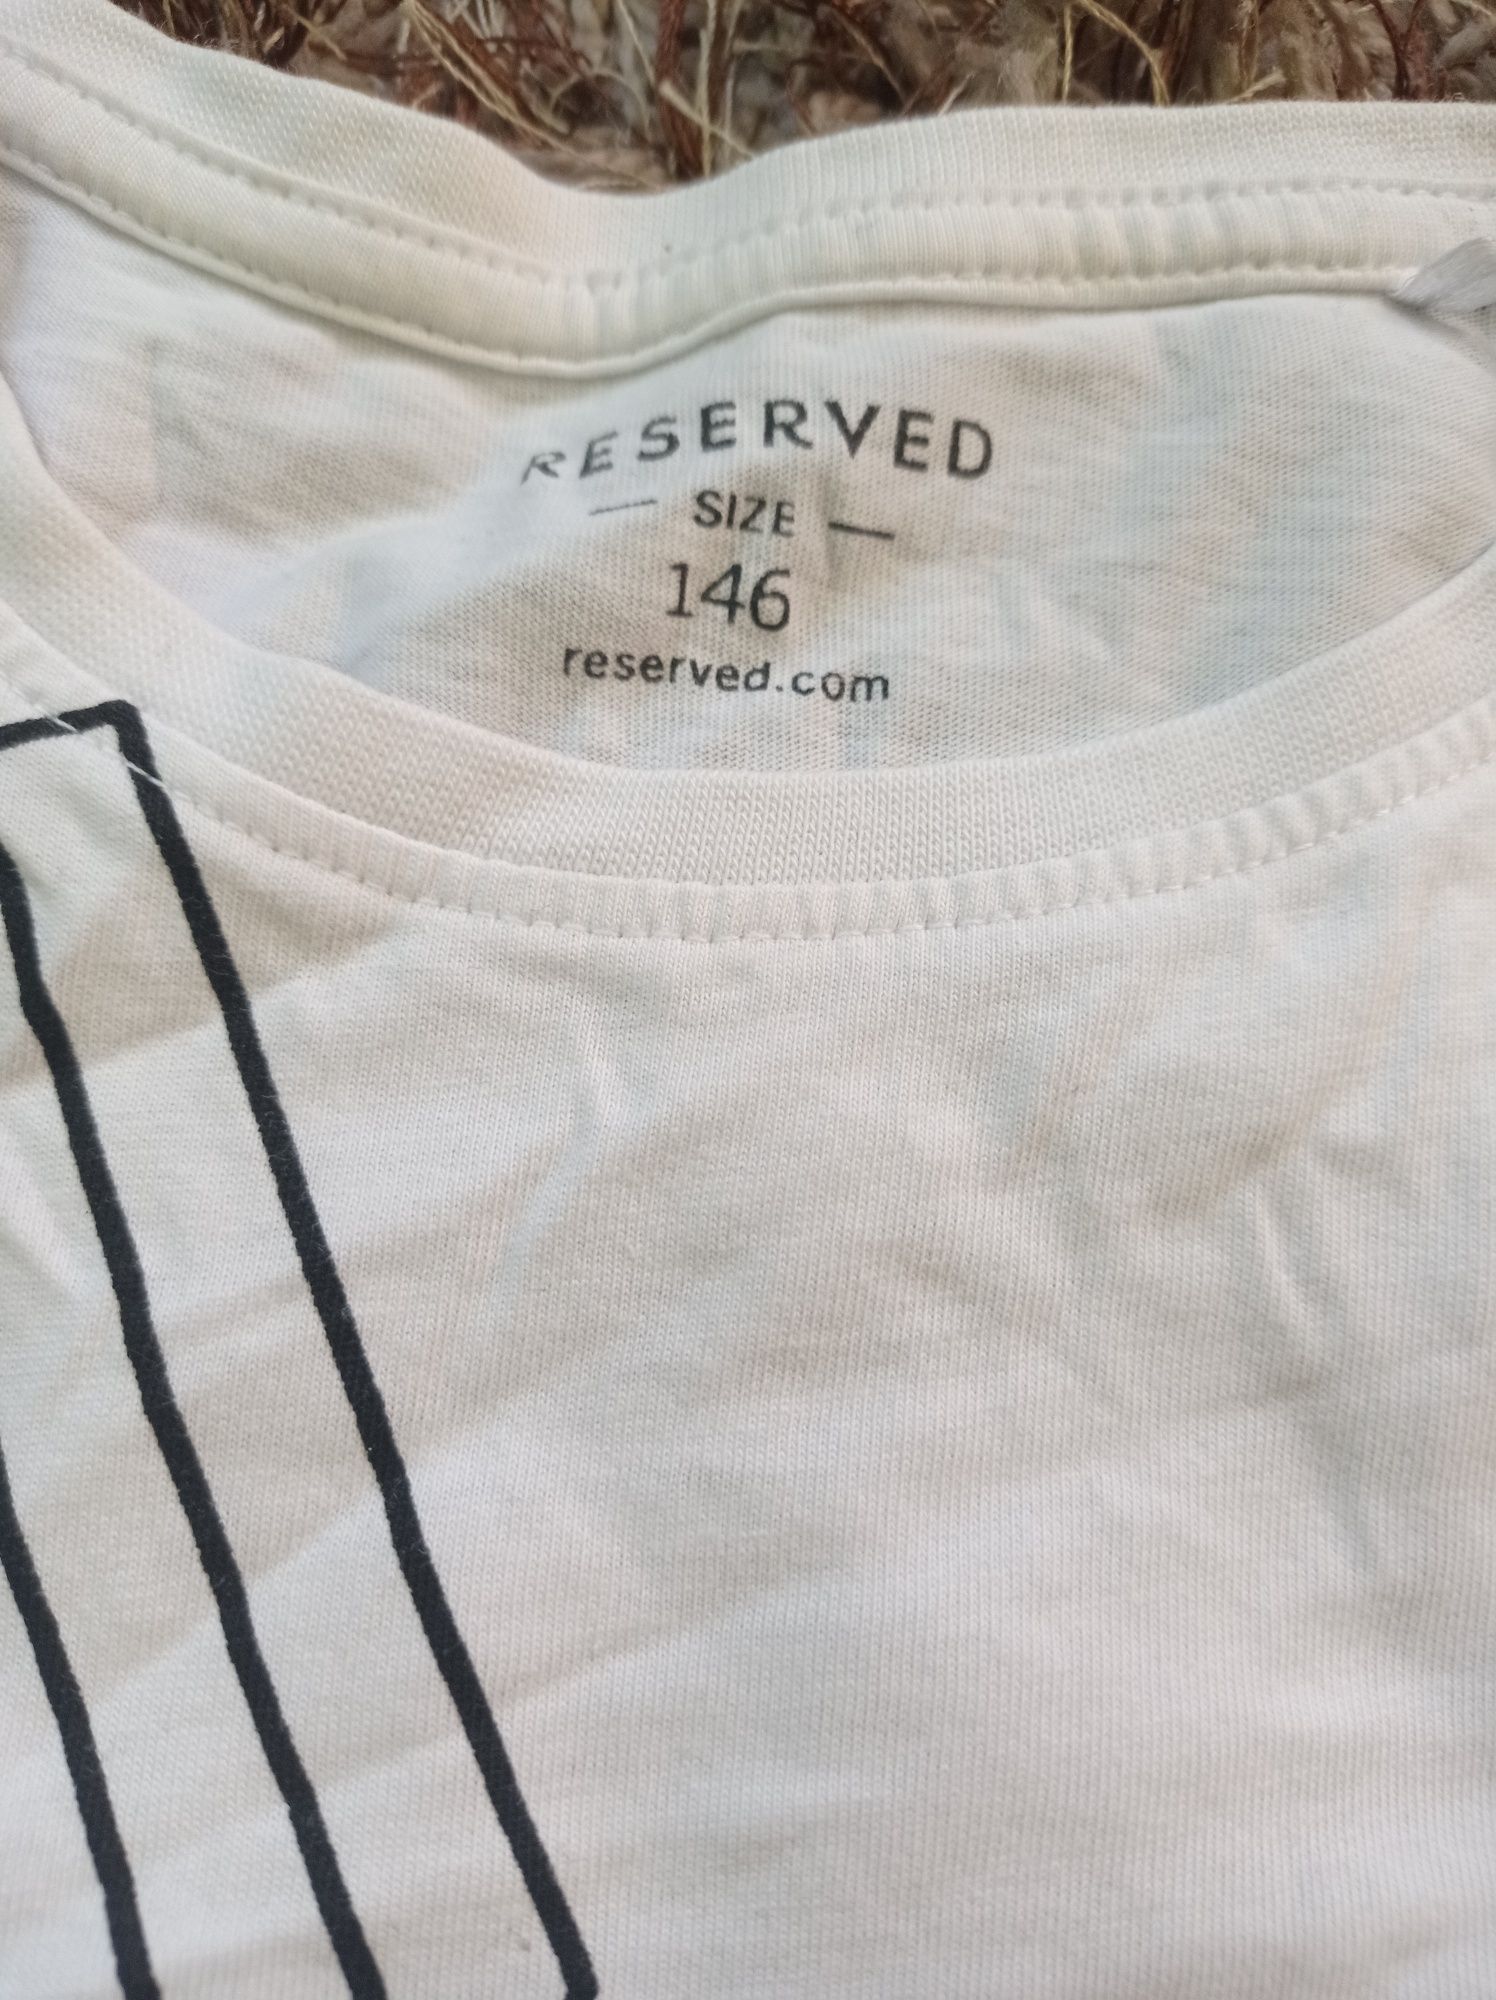 Koszulka chłopięca Reserved w rozmiarze 146